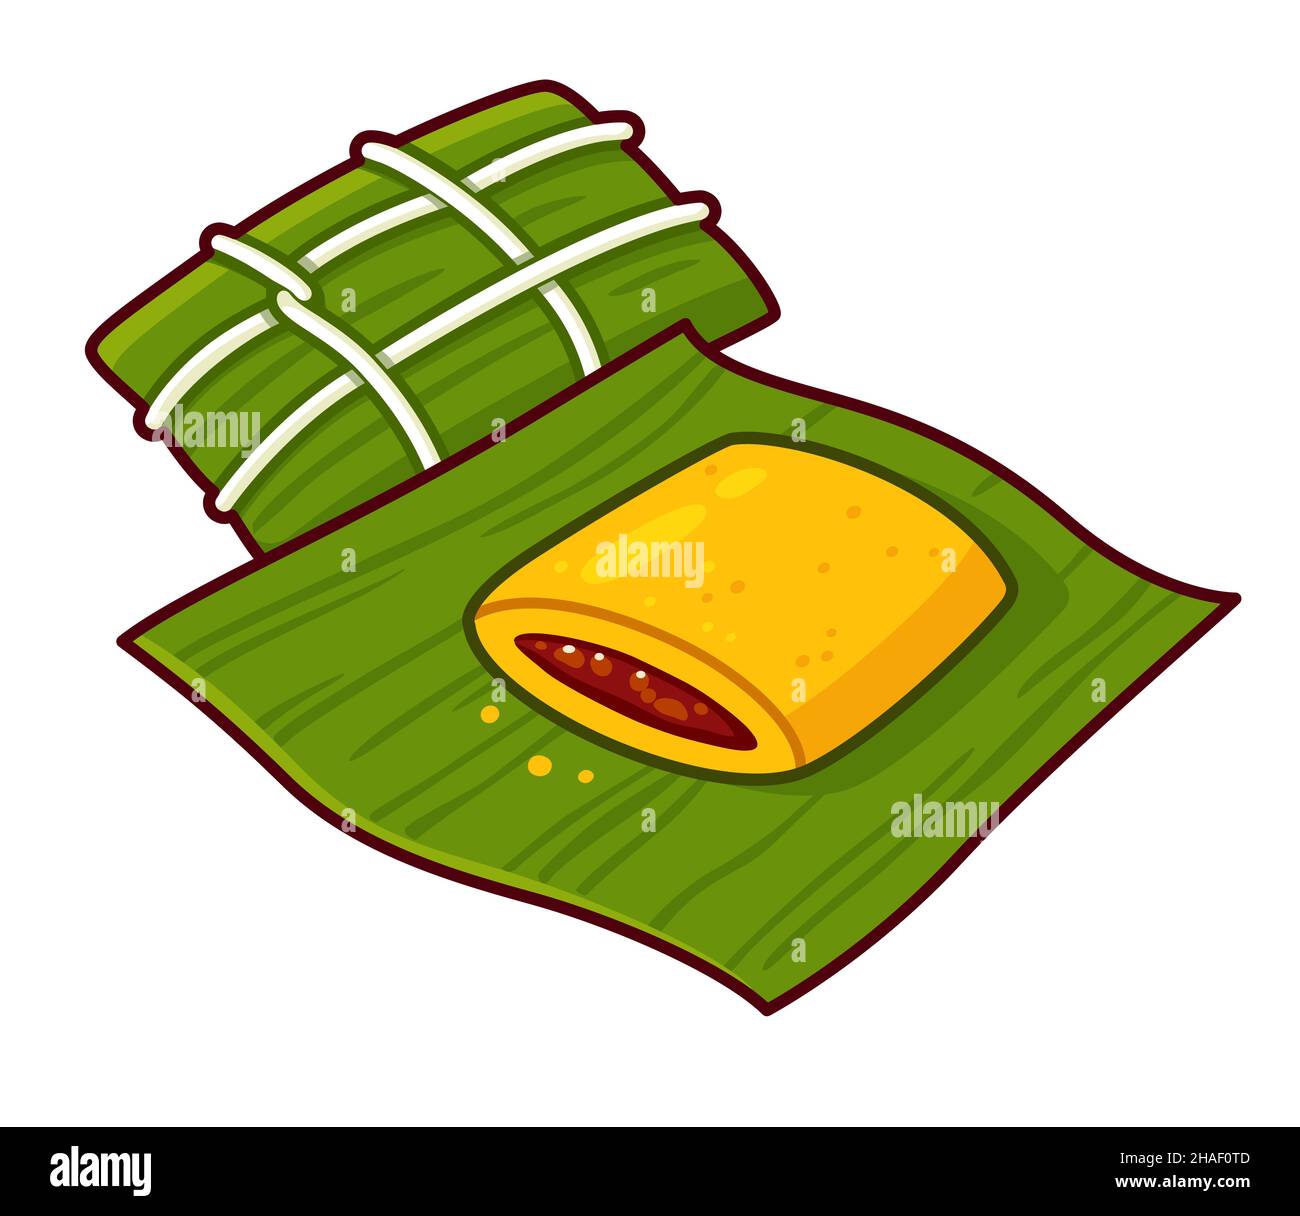 Hallaca, traditionelle venezolanische Maisamal, gefüllt mit Rindfleisch und in Blätter gewickelt. Cartoon-Zeichnung, isolierte Vektor Clip Art Illustration. Stock Vektor